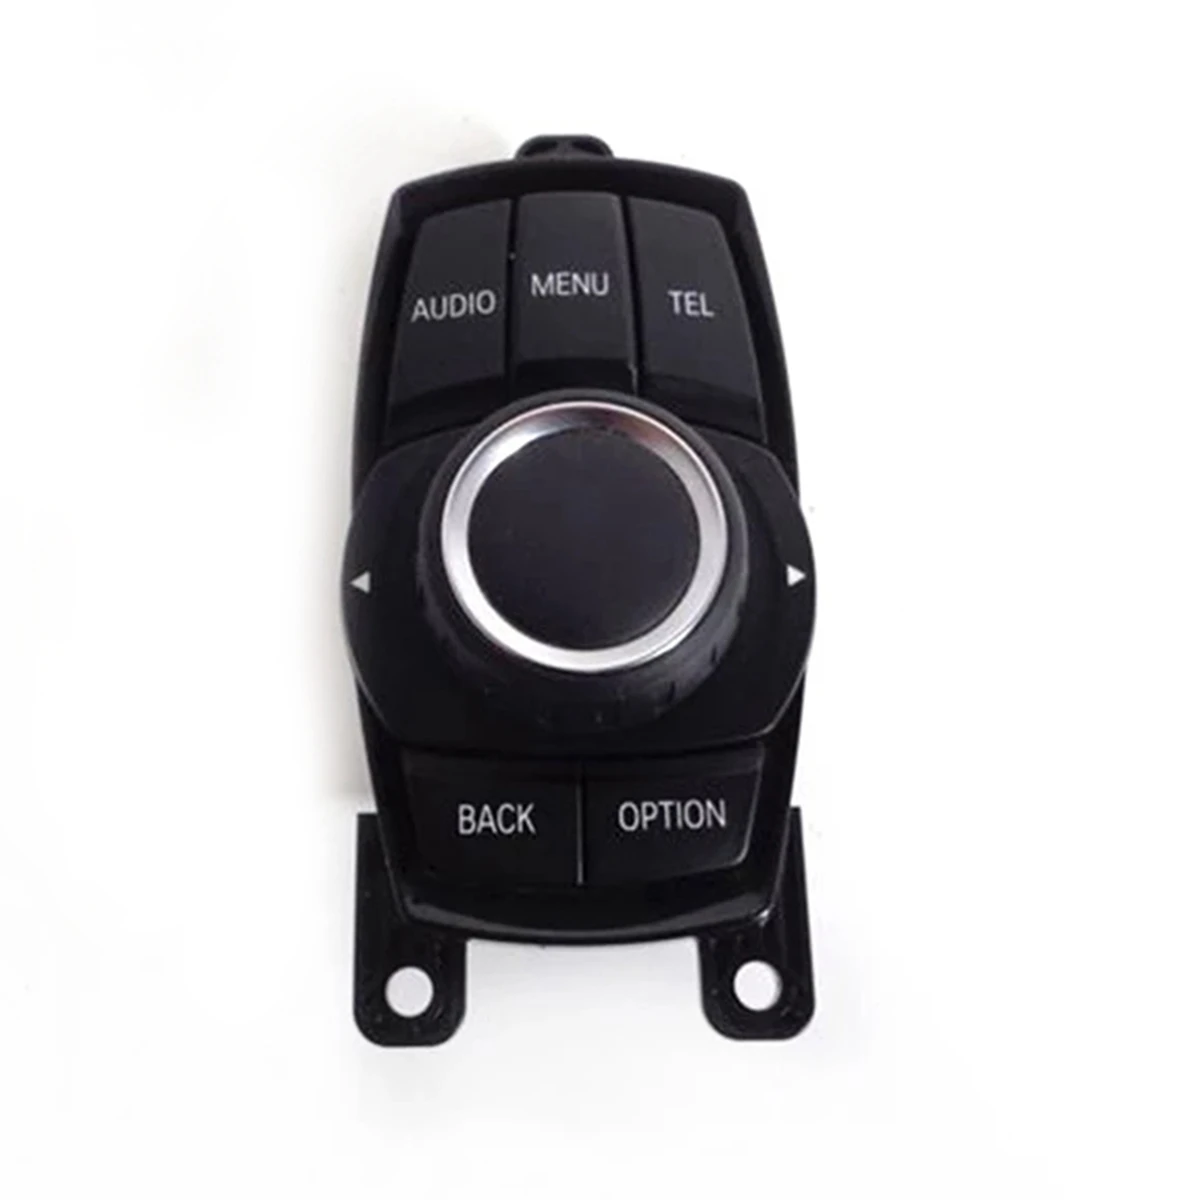 

Автомобильный Центральный контроллер 65829381678, мультимедийный контроллер для-BMW 1 3 Series X3 F20 F25 F30, кнопочный переключатель мыши